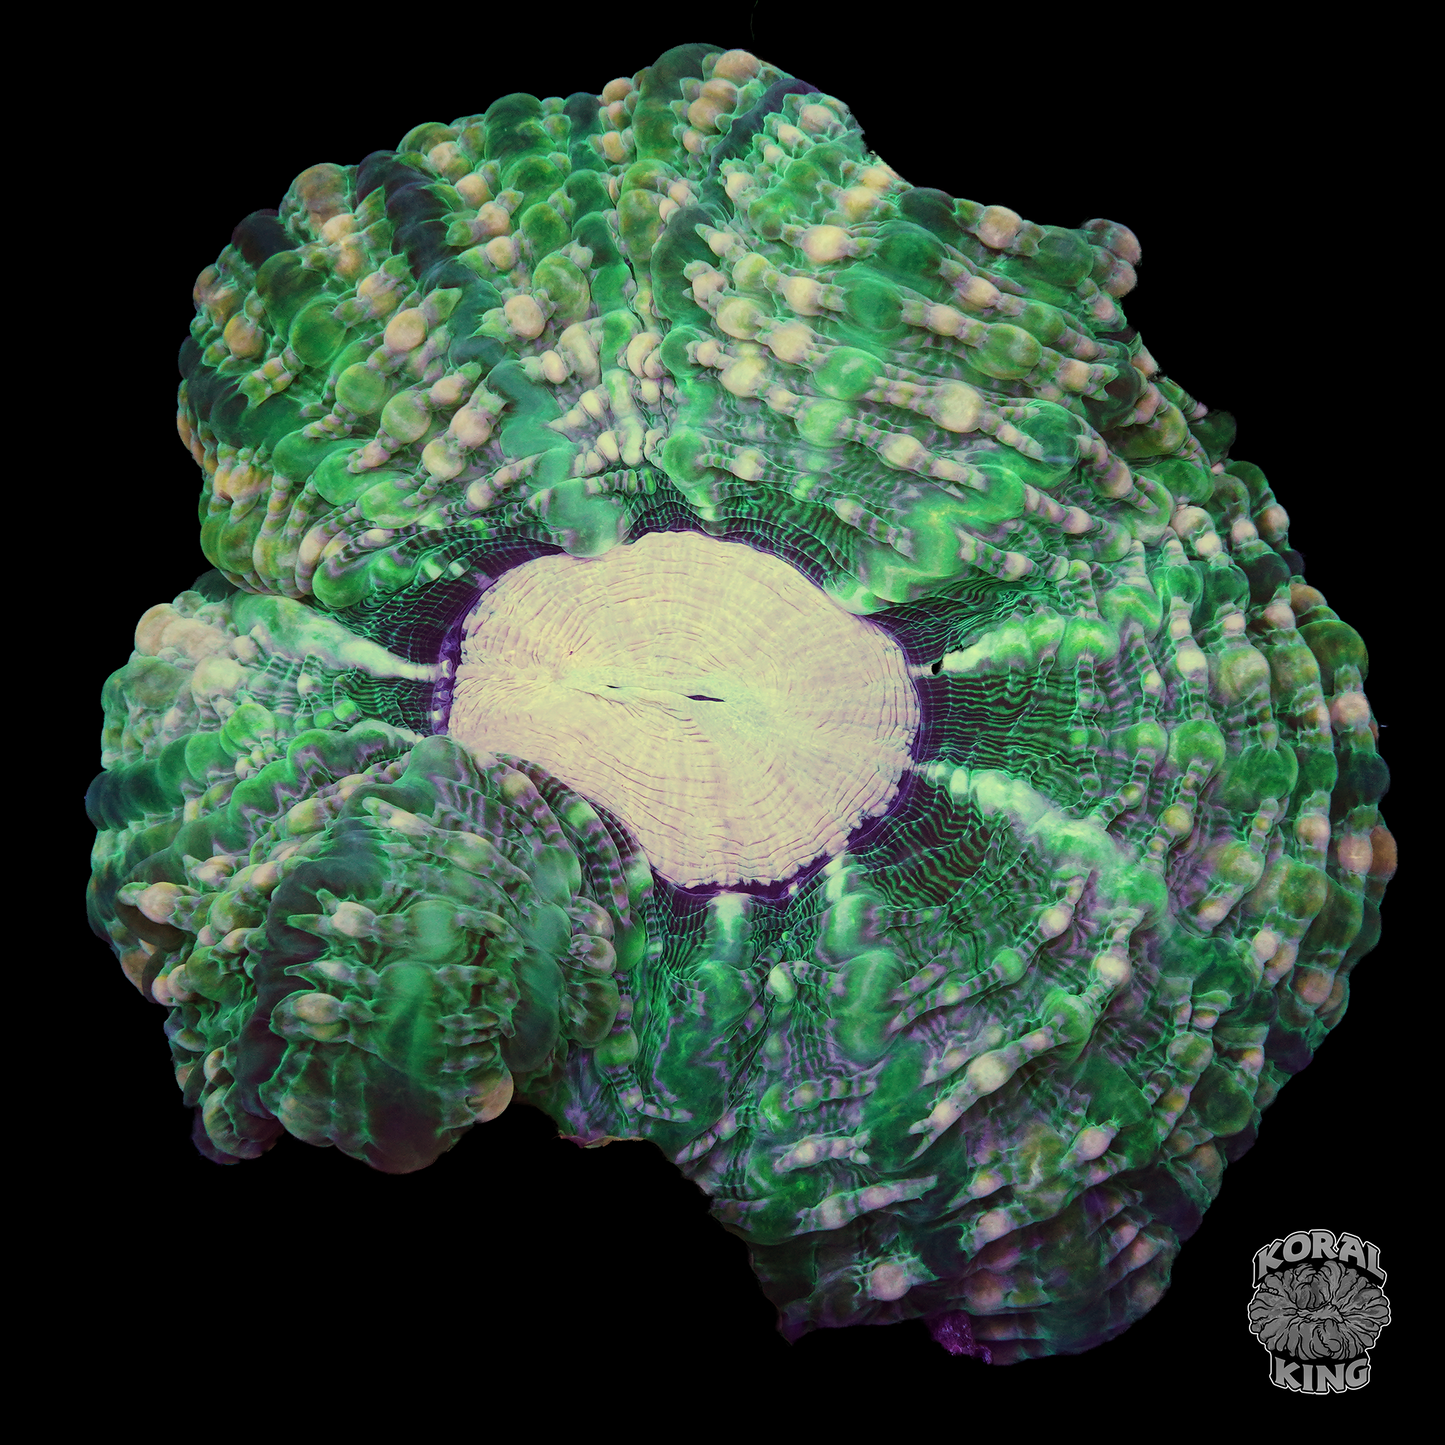 Emerald Splash Indophyllia - Koral King